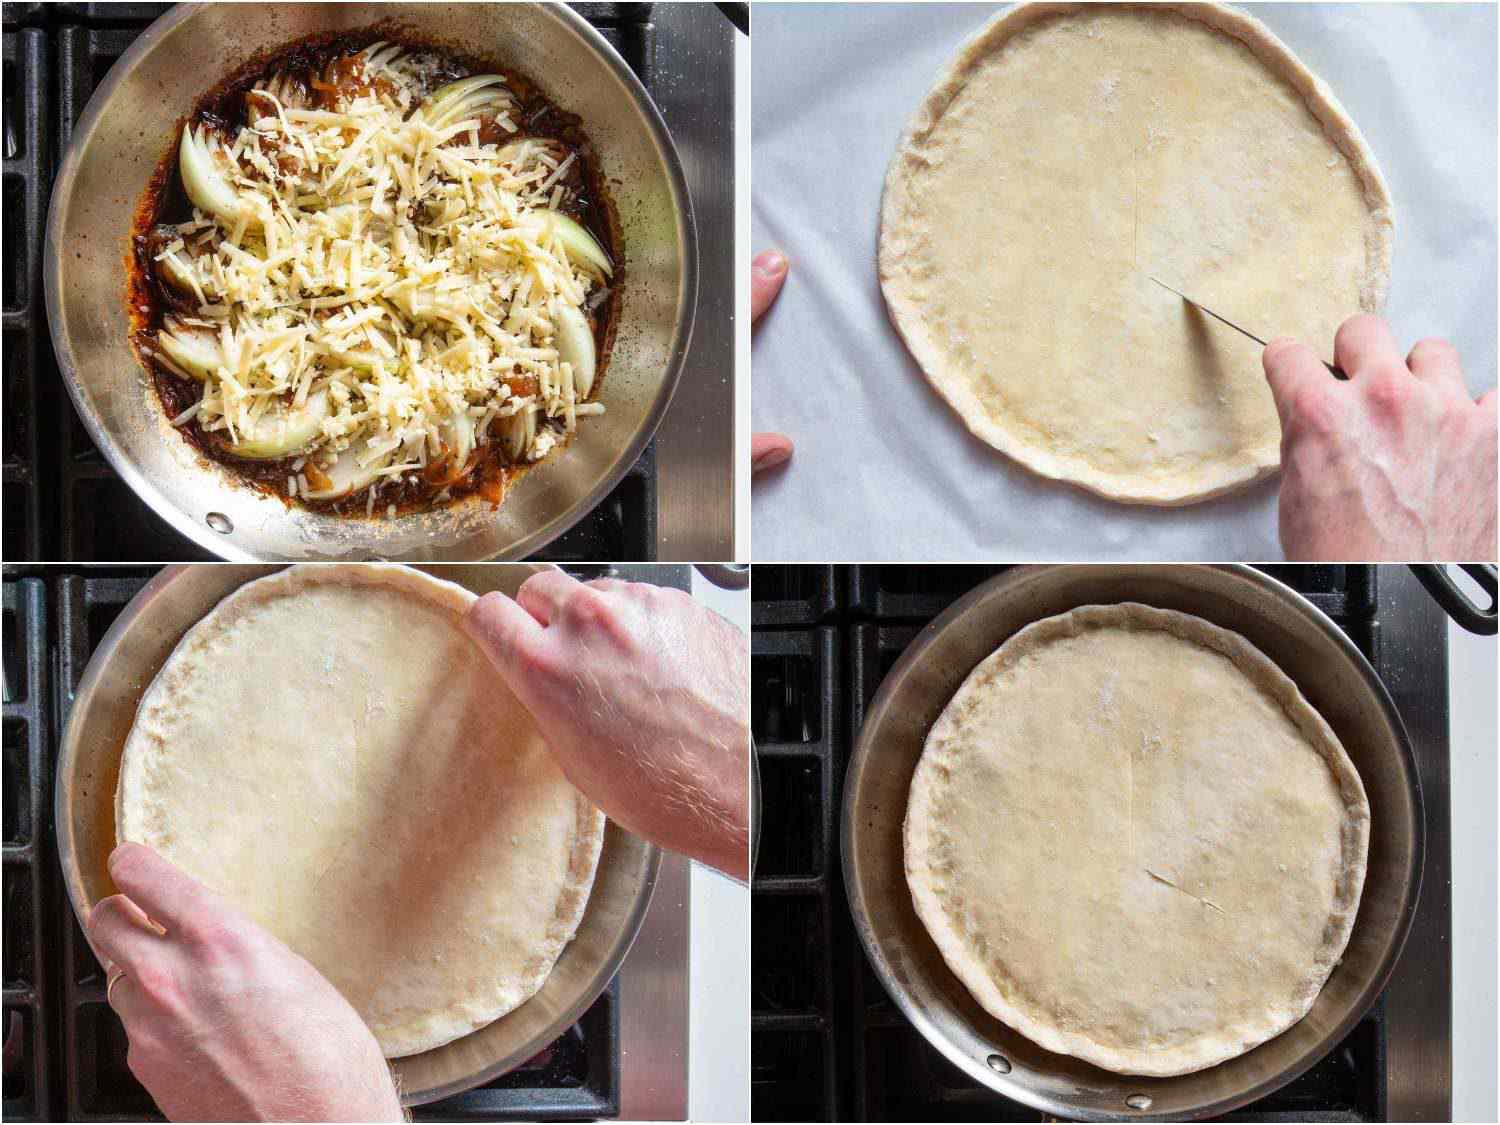 照片拼贴:在煎锅里的洋葱上撒上奶酪，在把煎锅放进烤箱之前在上面撒上圆形的派面团。gydF4y2Ba